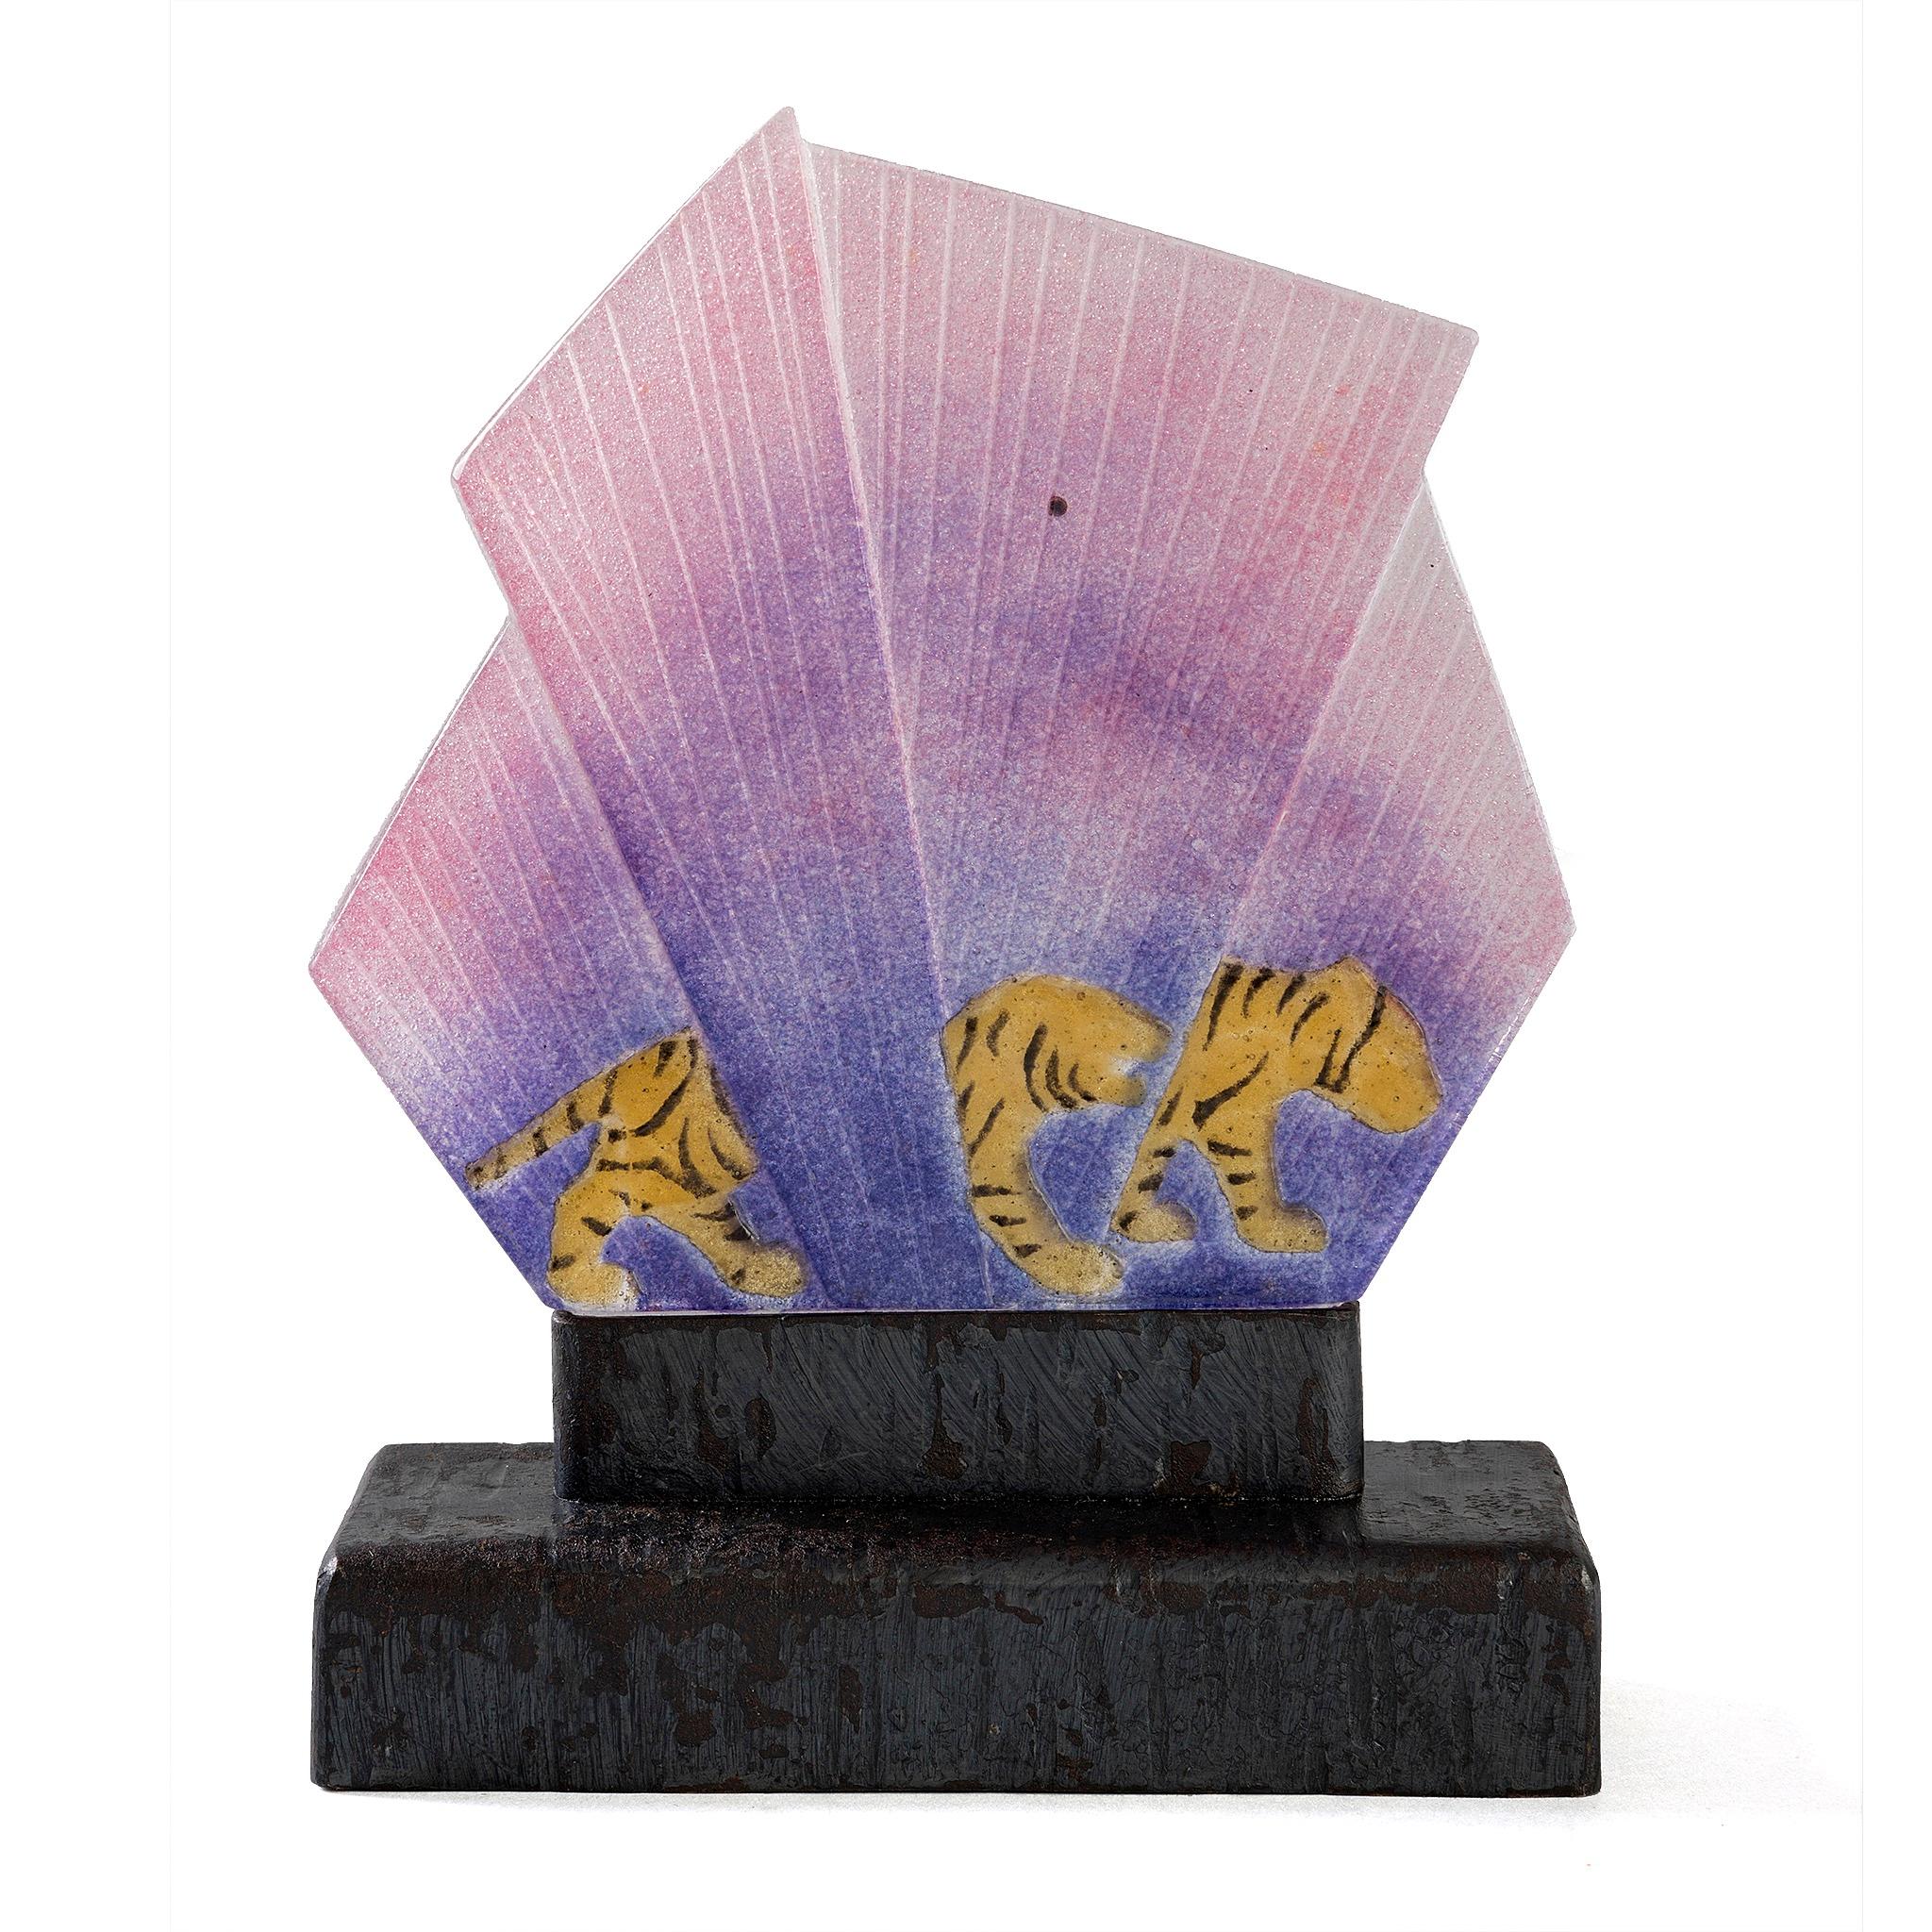 Lampe à Pate-de-verre de Gabriel ROUSSEAU, représentant deux tigres rouges traquant leur proie dans un éventail d'herbes violettes. Le pate-de-verre repose sur une base en fer forgé également incisée de rainures en forme de tigre. La population